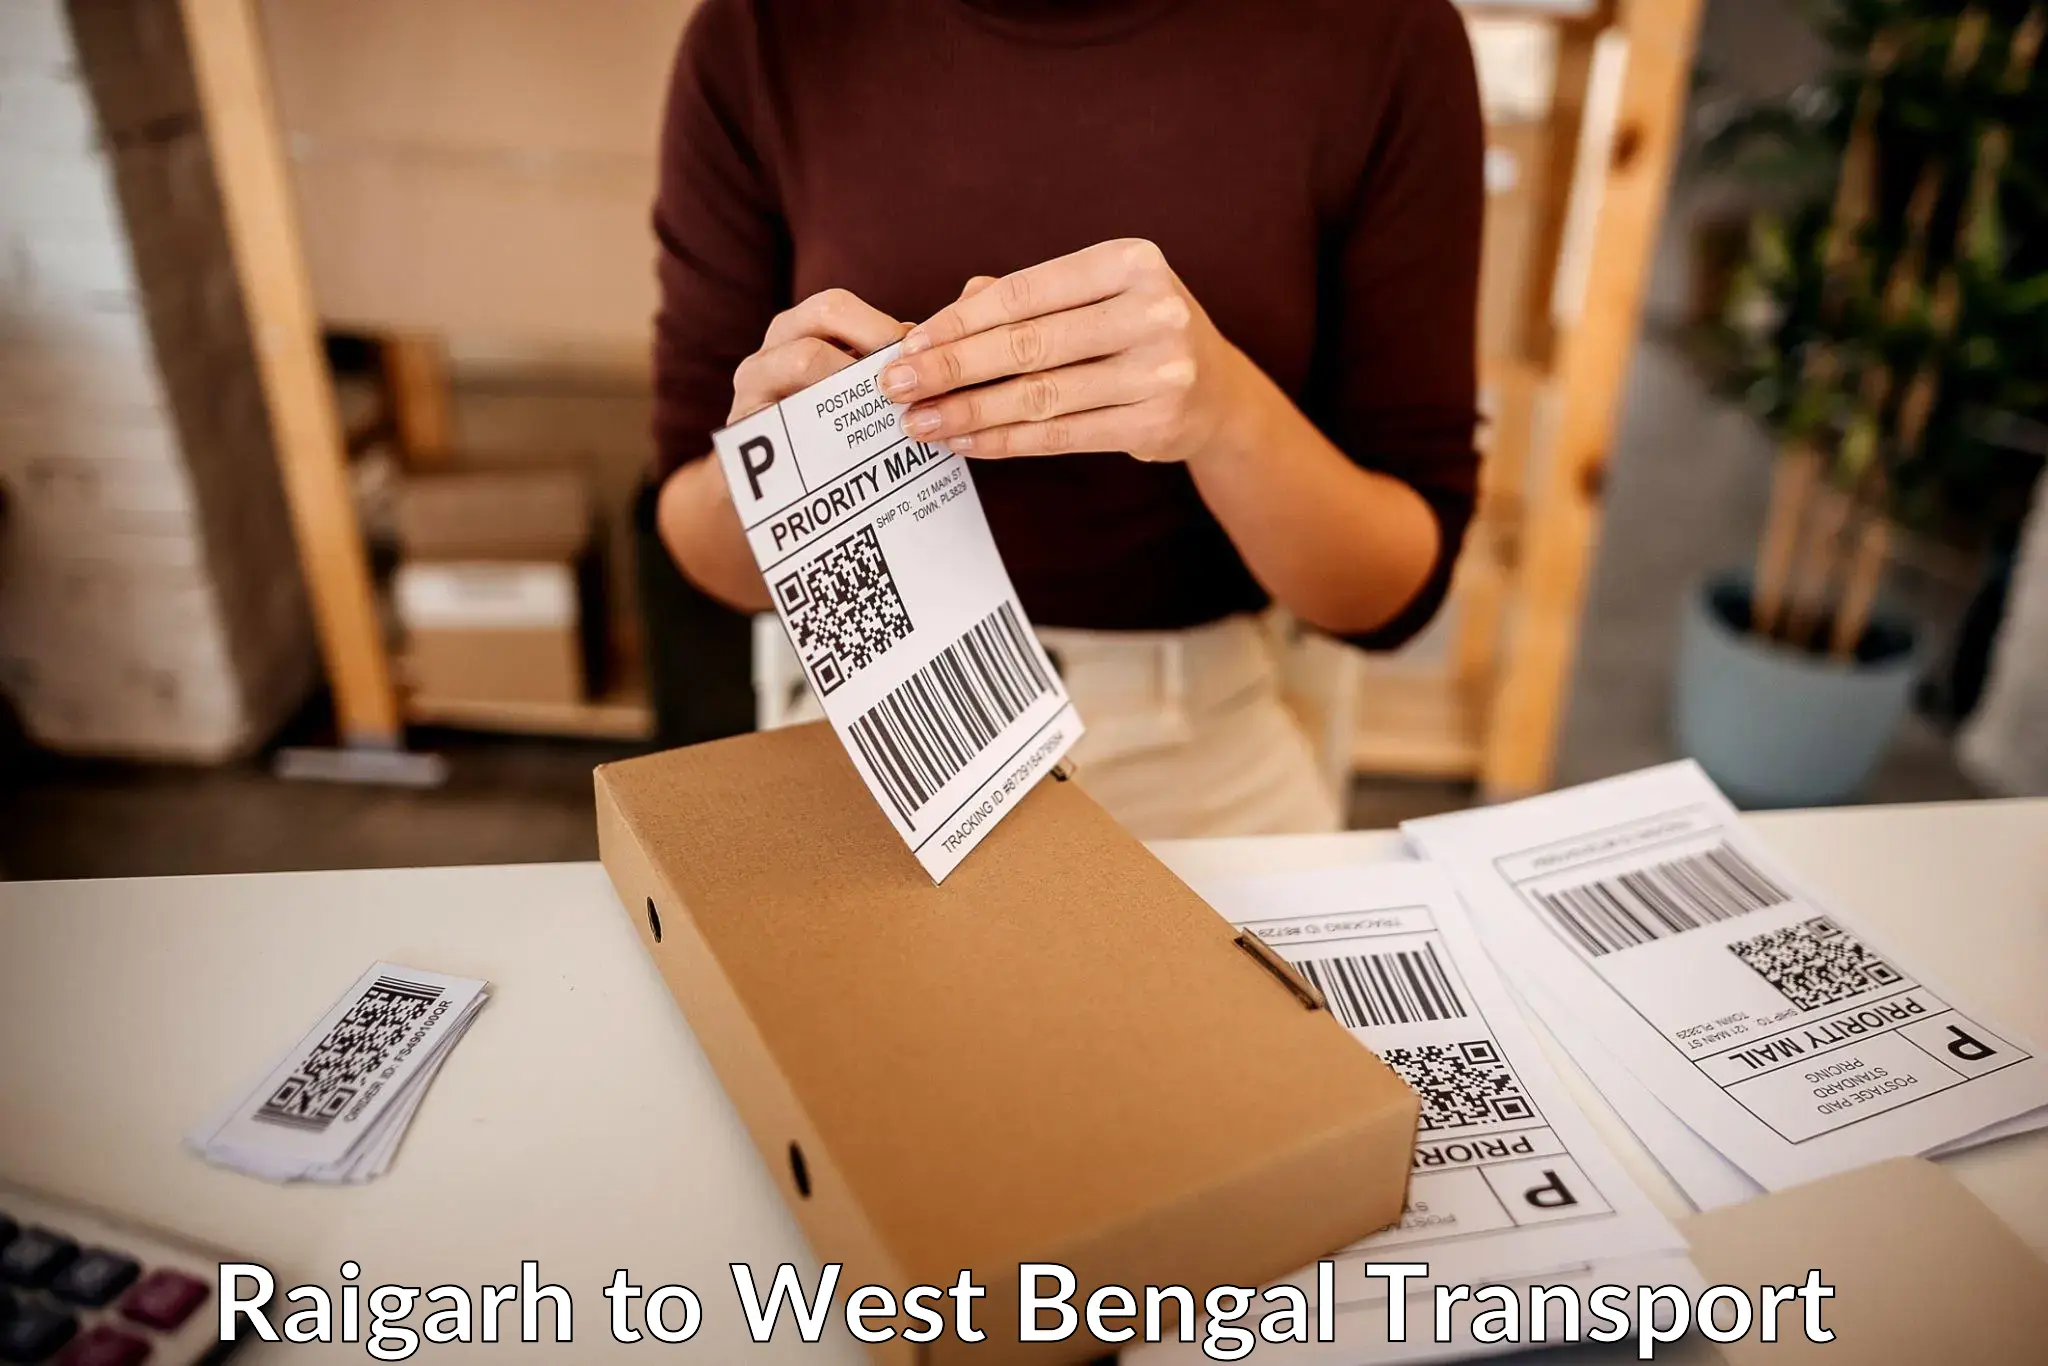 Delivery service Raigarh to Siliguri